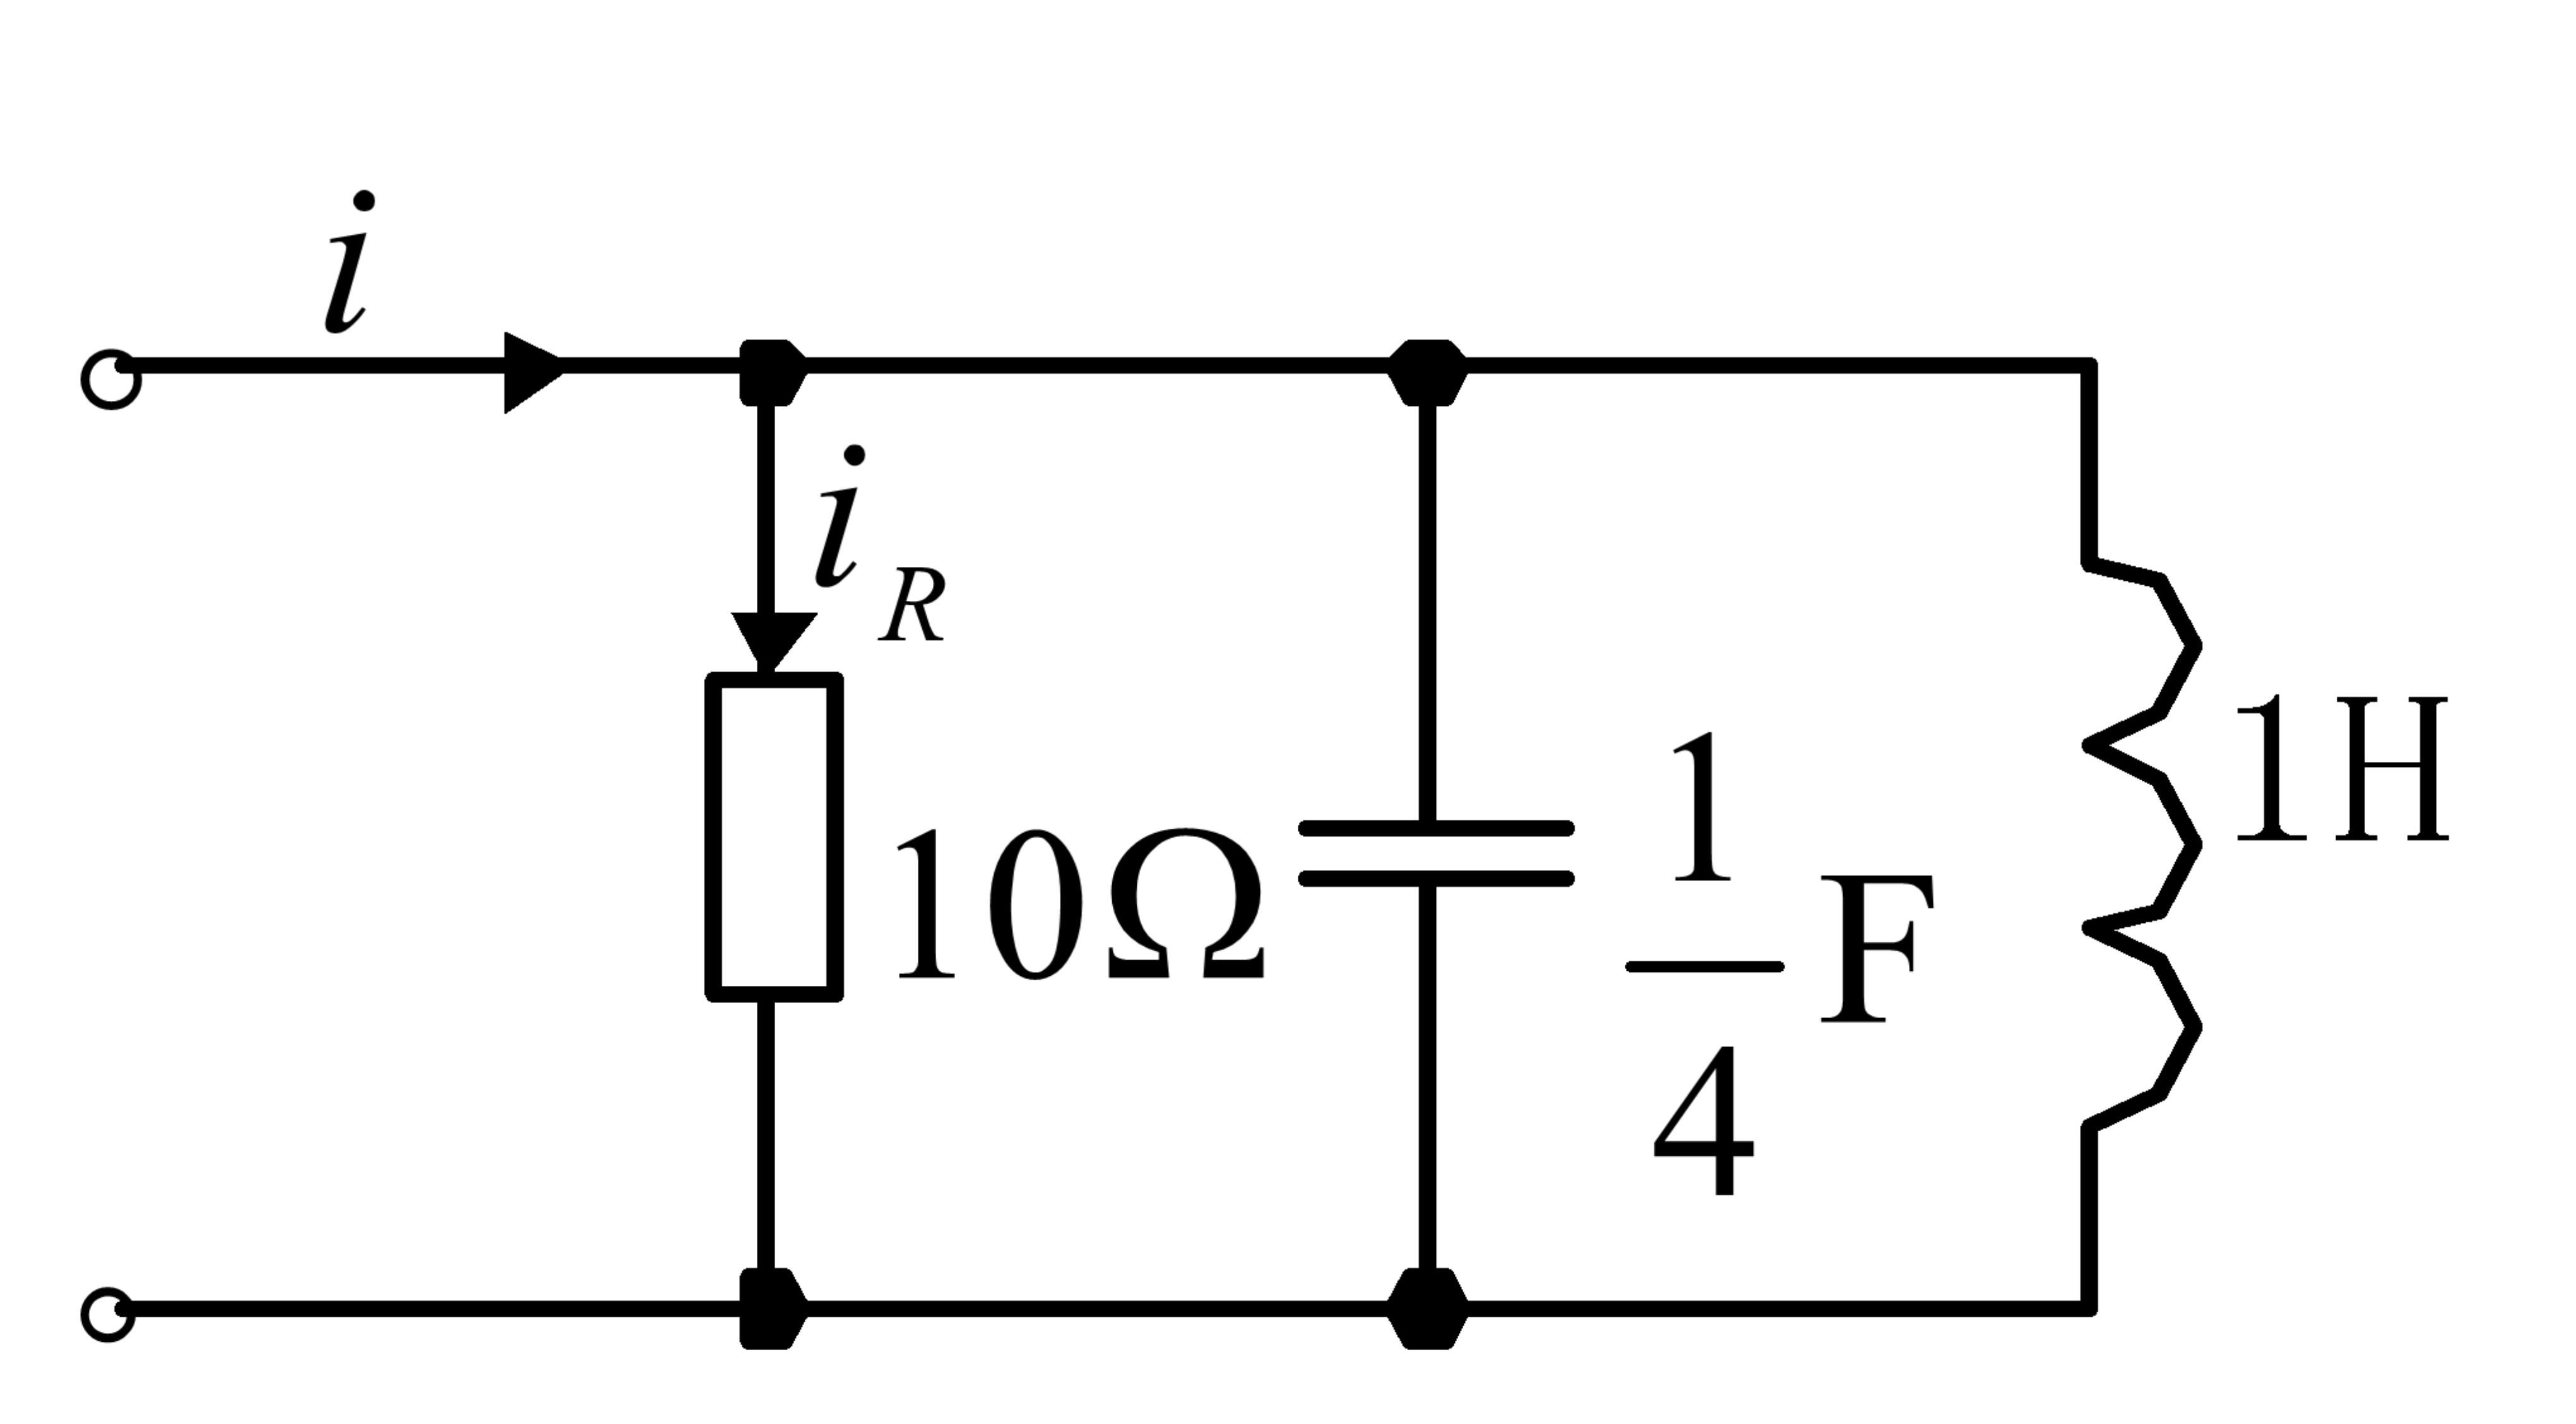 图5.2所示RLC并联谐振电路中，A，改变频率使得的有效值等于10A，此时频率f应为 图5.2A、1